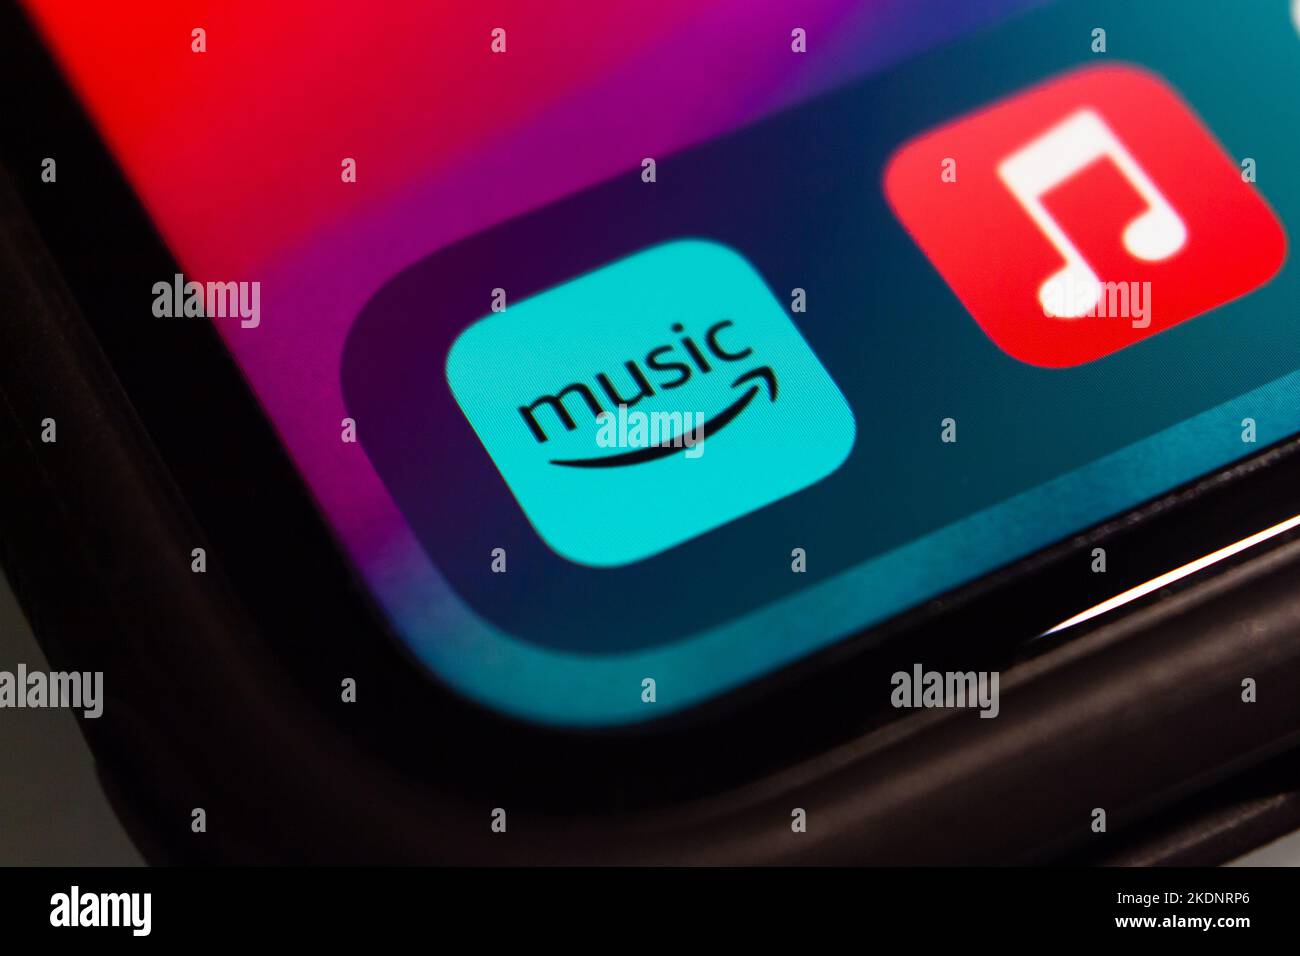 Vancouver, CANADA - Nov 4 2022 : Amazon Music, una piattaforma di streaming musicale online e negozio di Amazon inc., su uno schermo di iPhone. Foto Stock